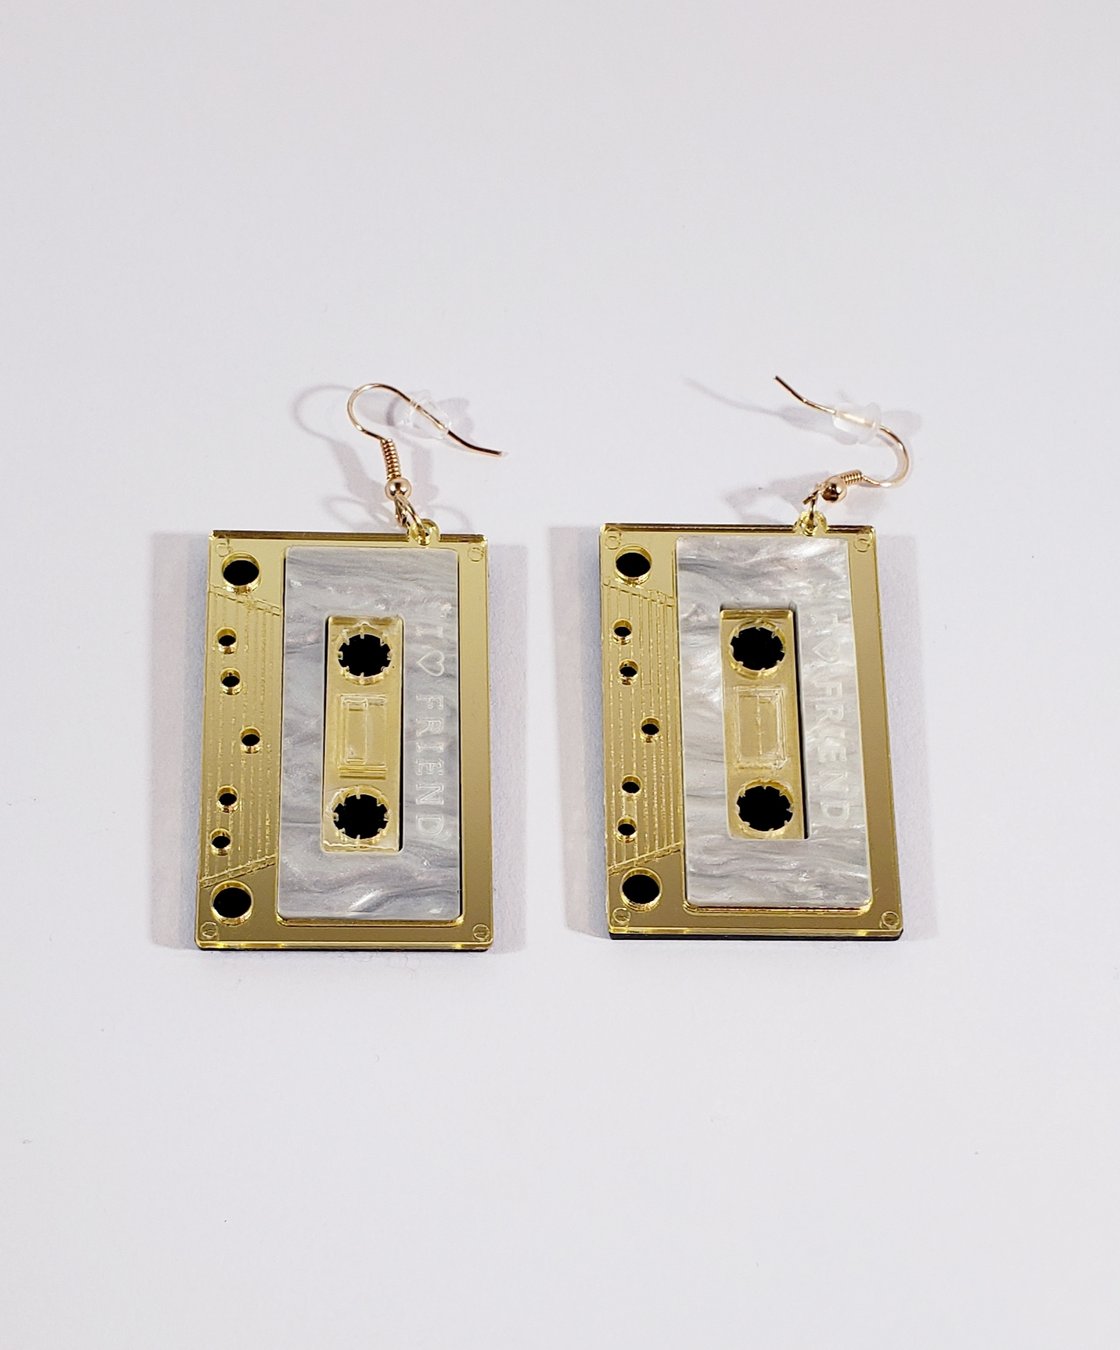 Image of Cassette Tape Earrings